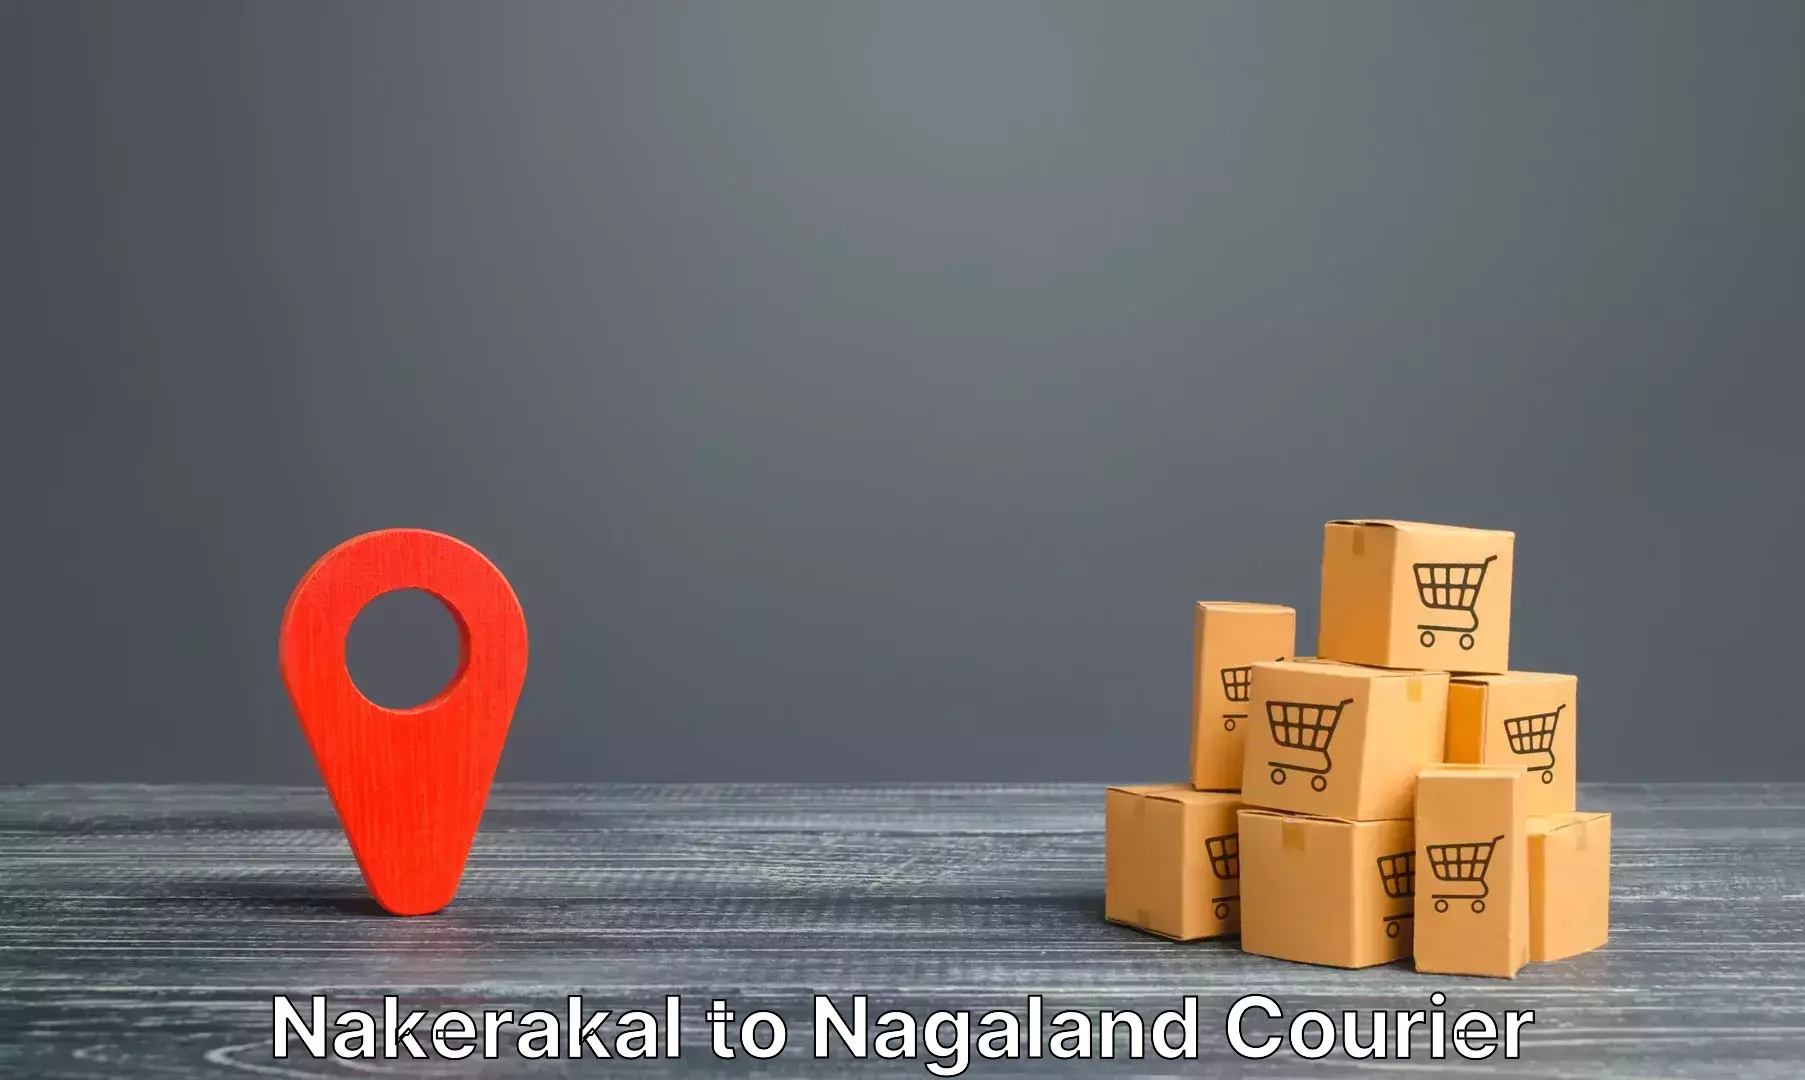 Digital baggage courier Nakerakal to Nagaland